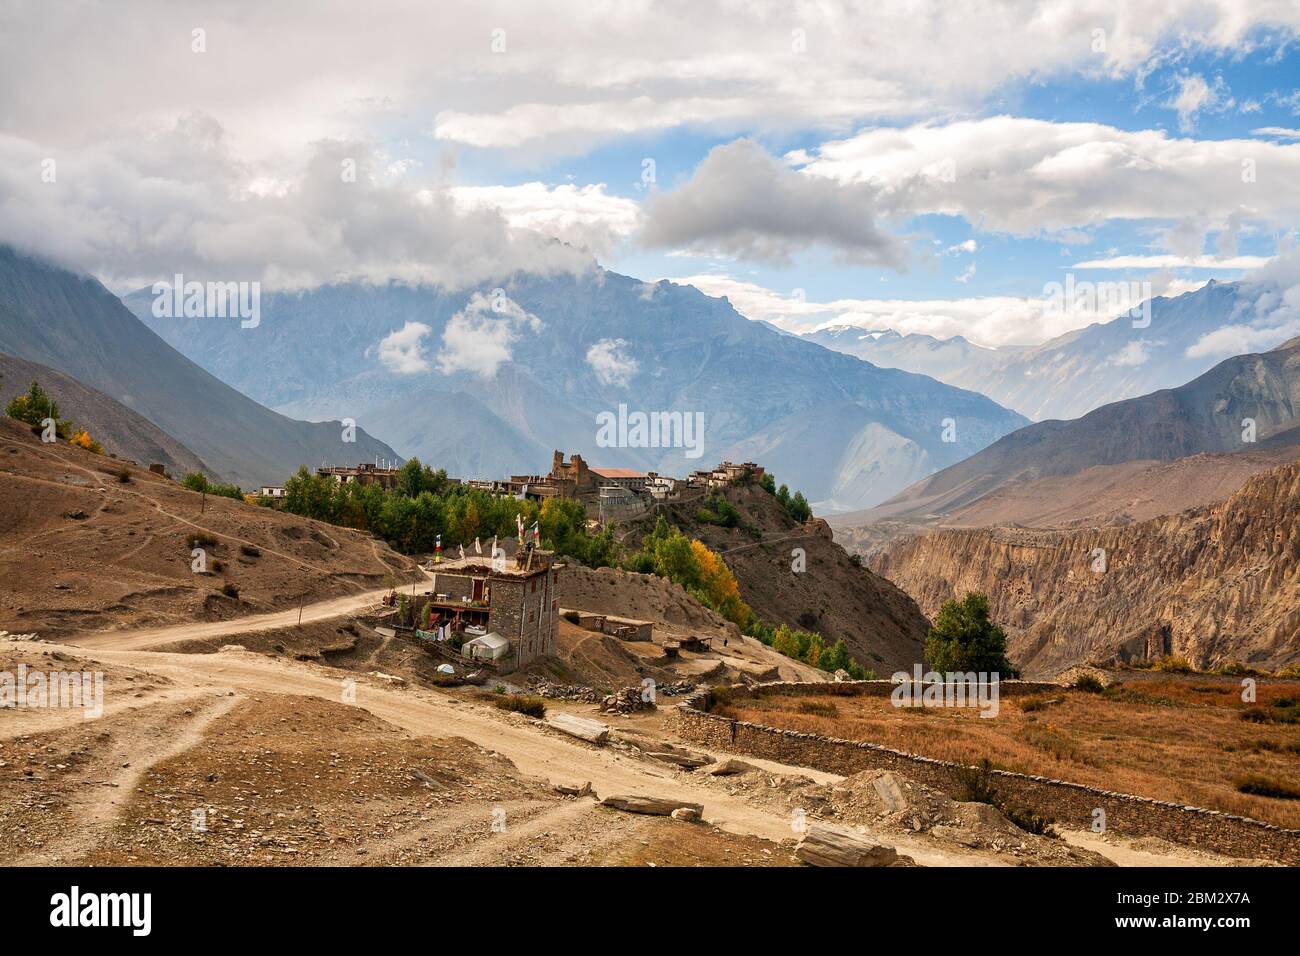 Village népalais de Jharkot entouré de montagnes, Mustang inférieur, Népal. Paysage de montagne d'automne Banque D'Images